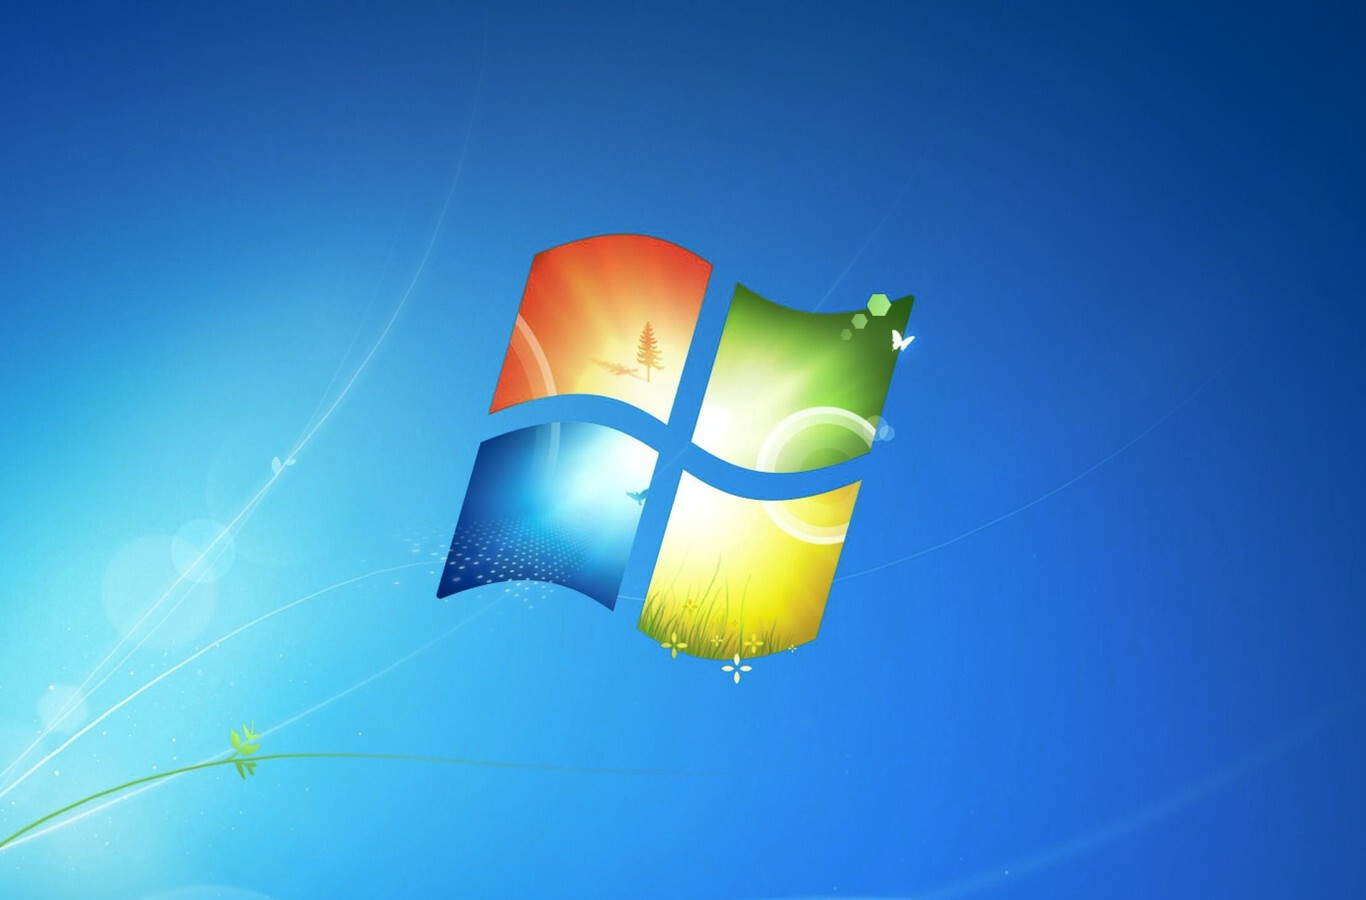 Windows 7 y Windows 8 están a un paso de convertirse en sistemas operativos oficialmente inseguros